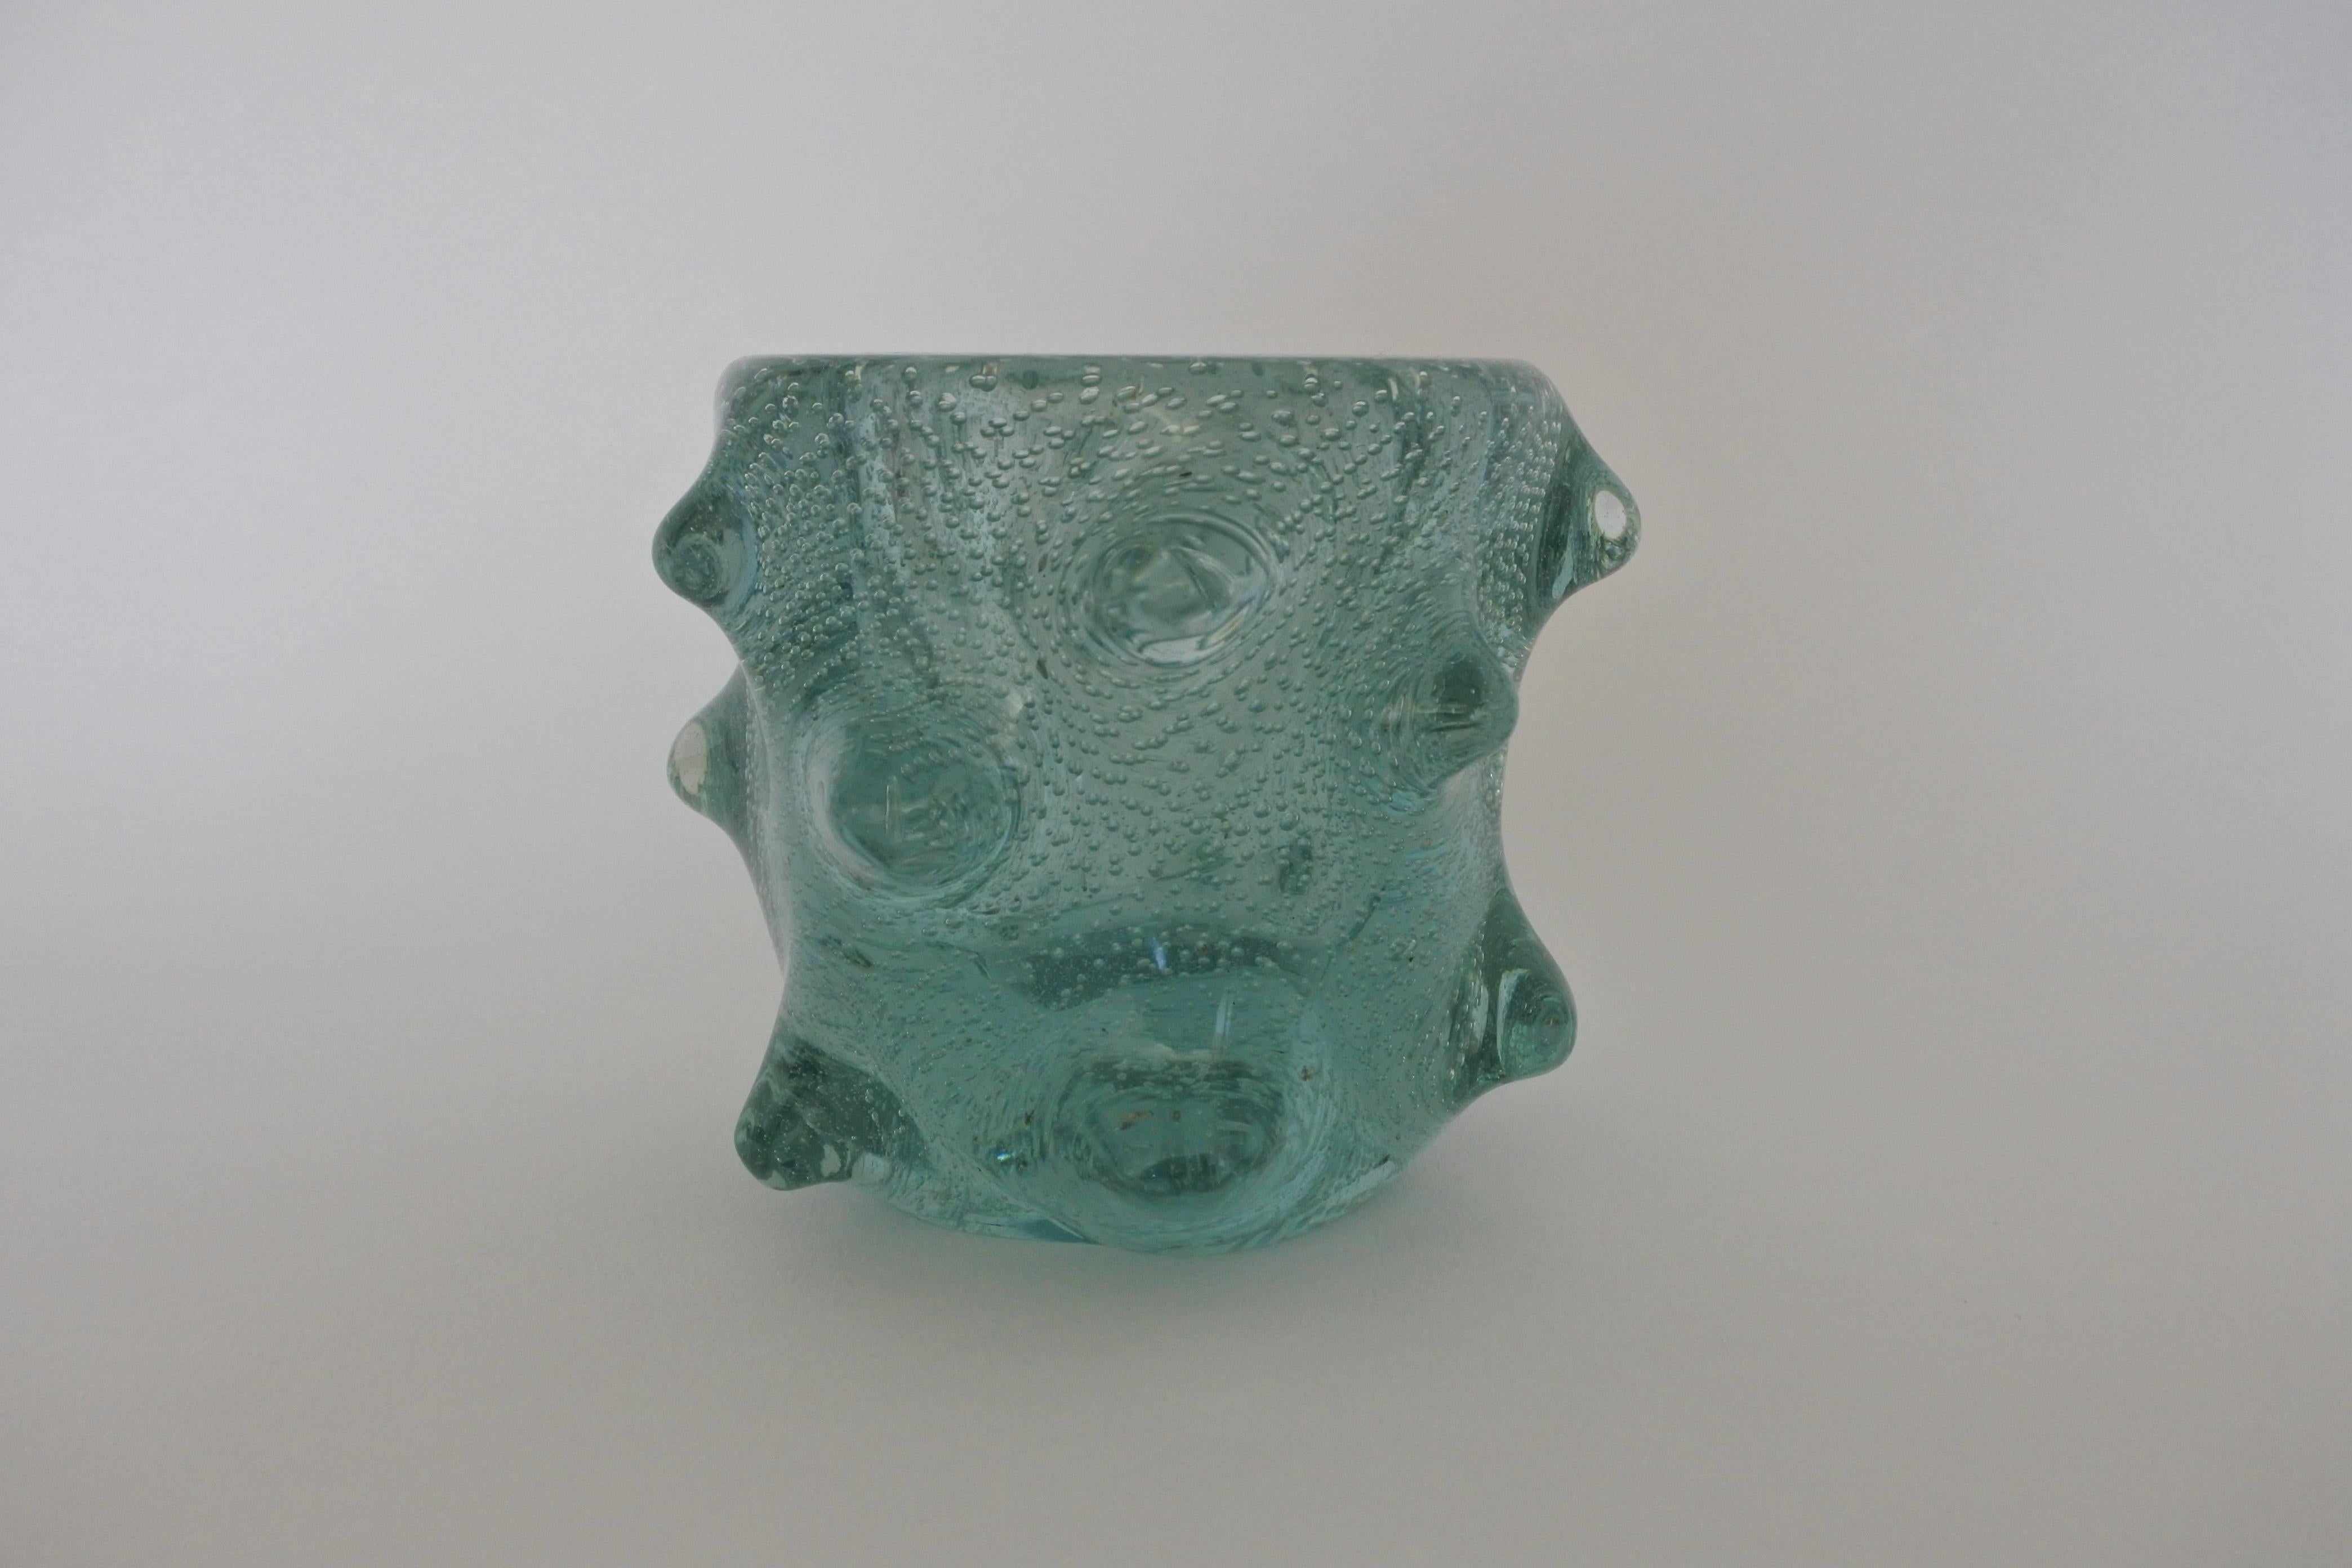 Vase aus mundgeblasenem Blasenglas.
Wird Venini zugeschrieben.
Hergestellt in Italien in den 1960er Jahren.

Aus einer einzigartigen Sammlung von Venini-Glas.